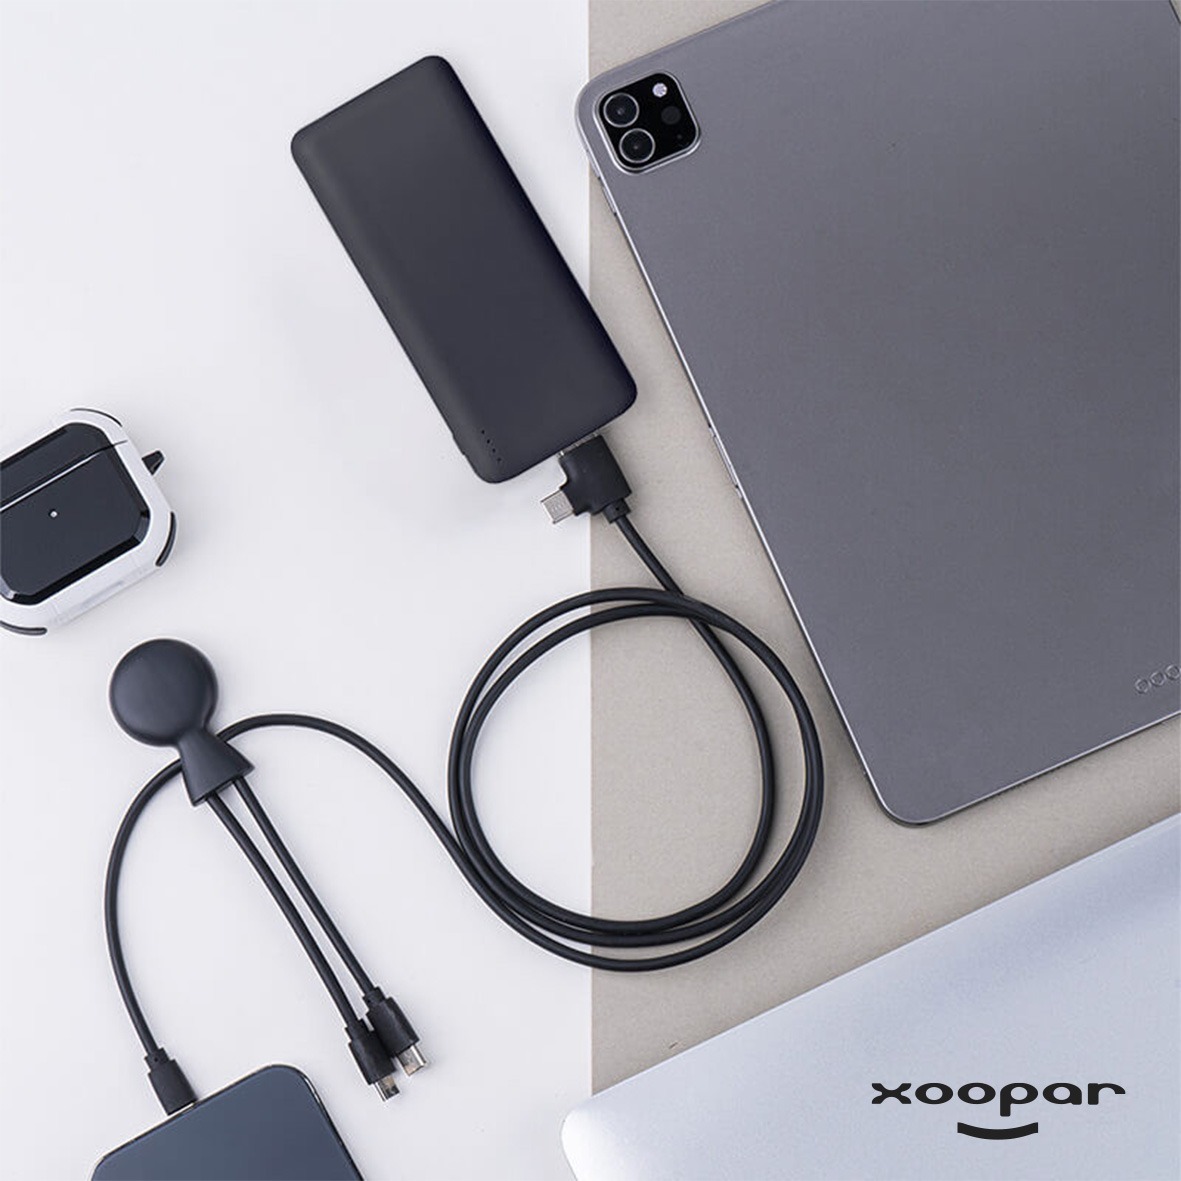 batterie chargeur et cables hepta eco xoopar personnalise-5